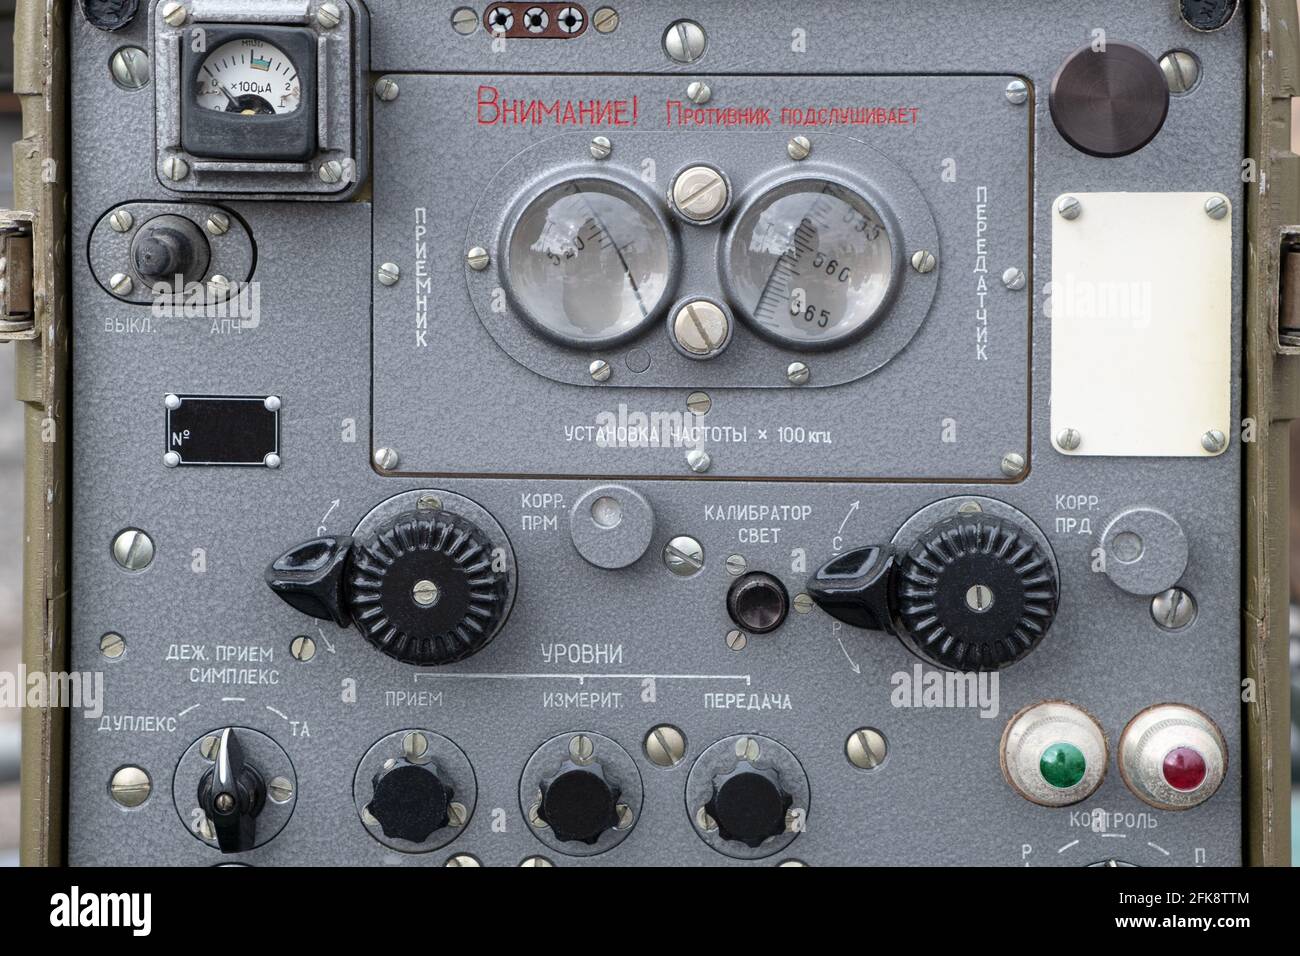 Ein Portable Retro Vintage alten Militär Sowjetunion Funksignal Radar  Tracking-Gerät. Suche nach illegalen Radiosendern und  Funkverfolgungsbeacons Stockfotografie - Alamy